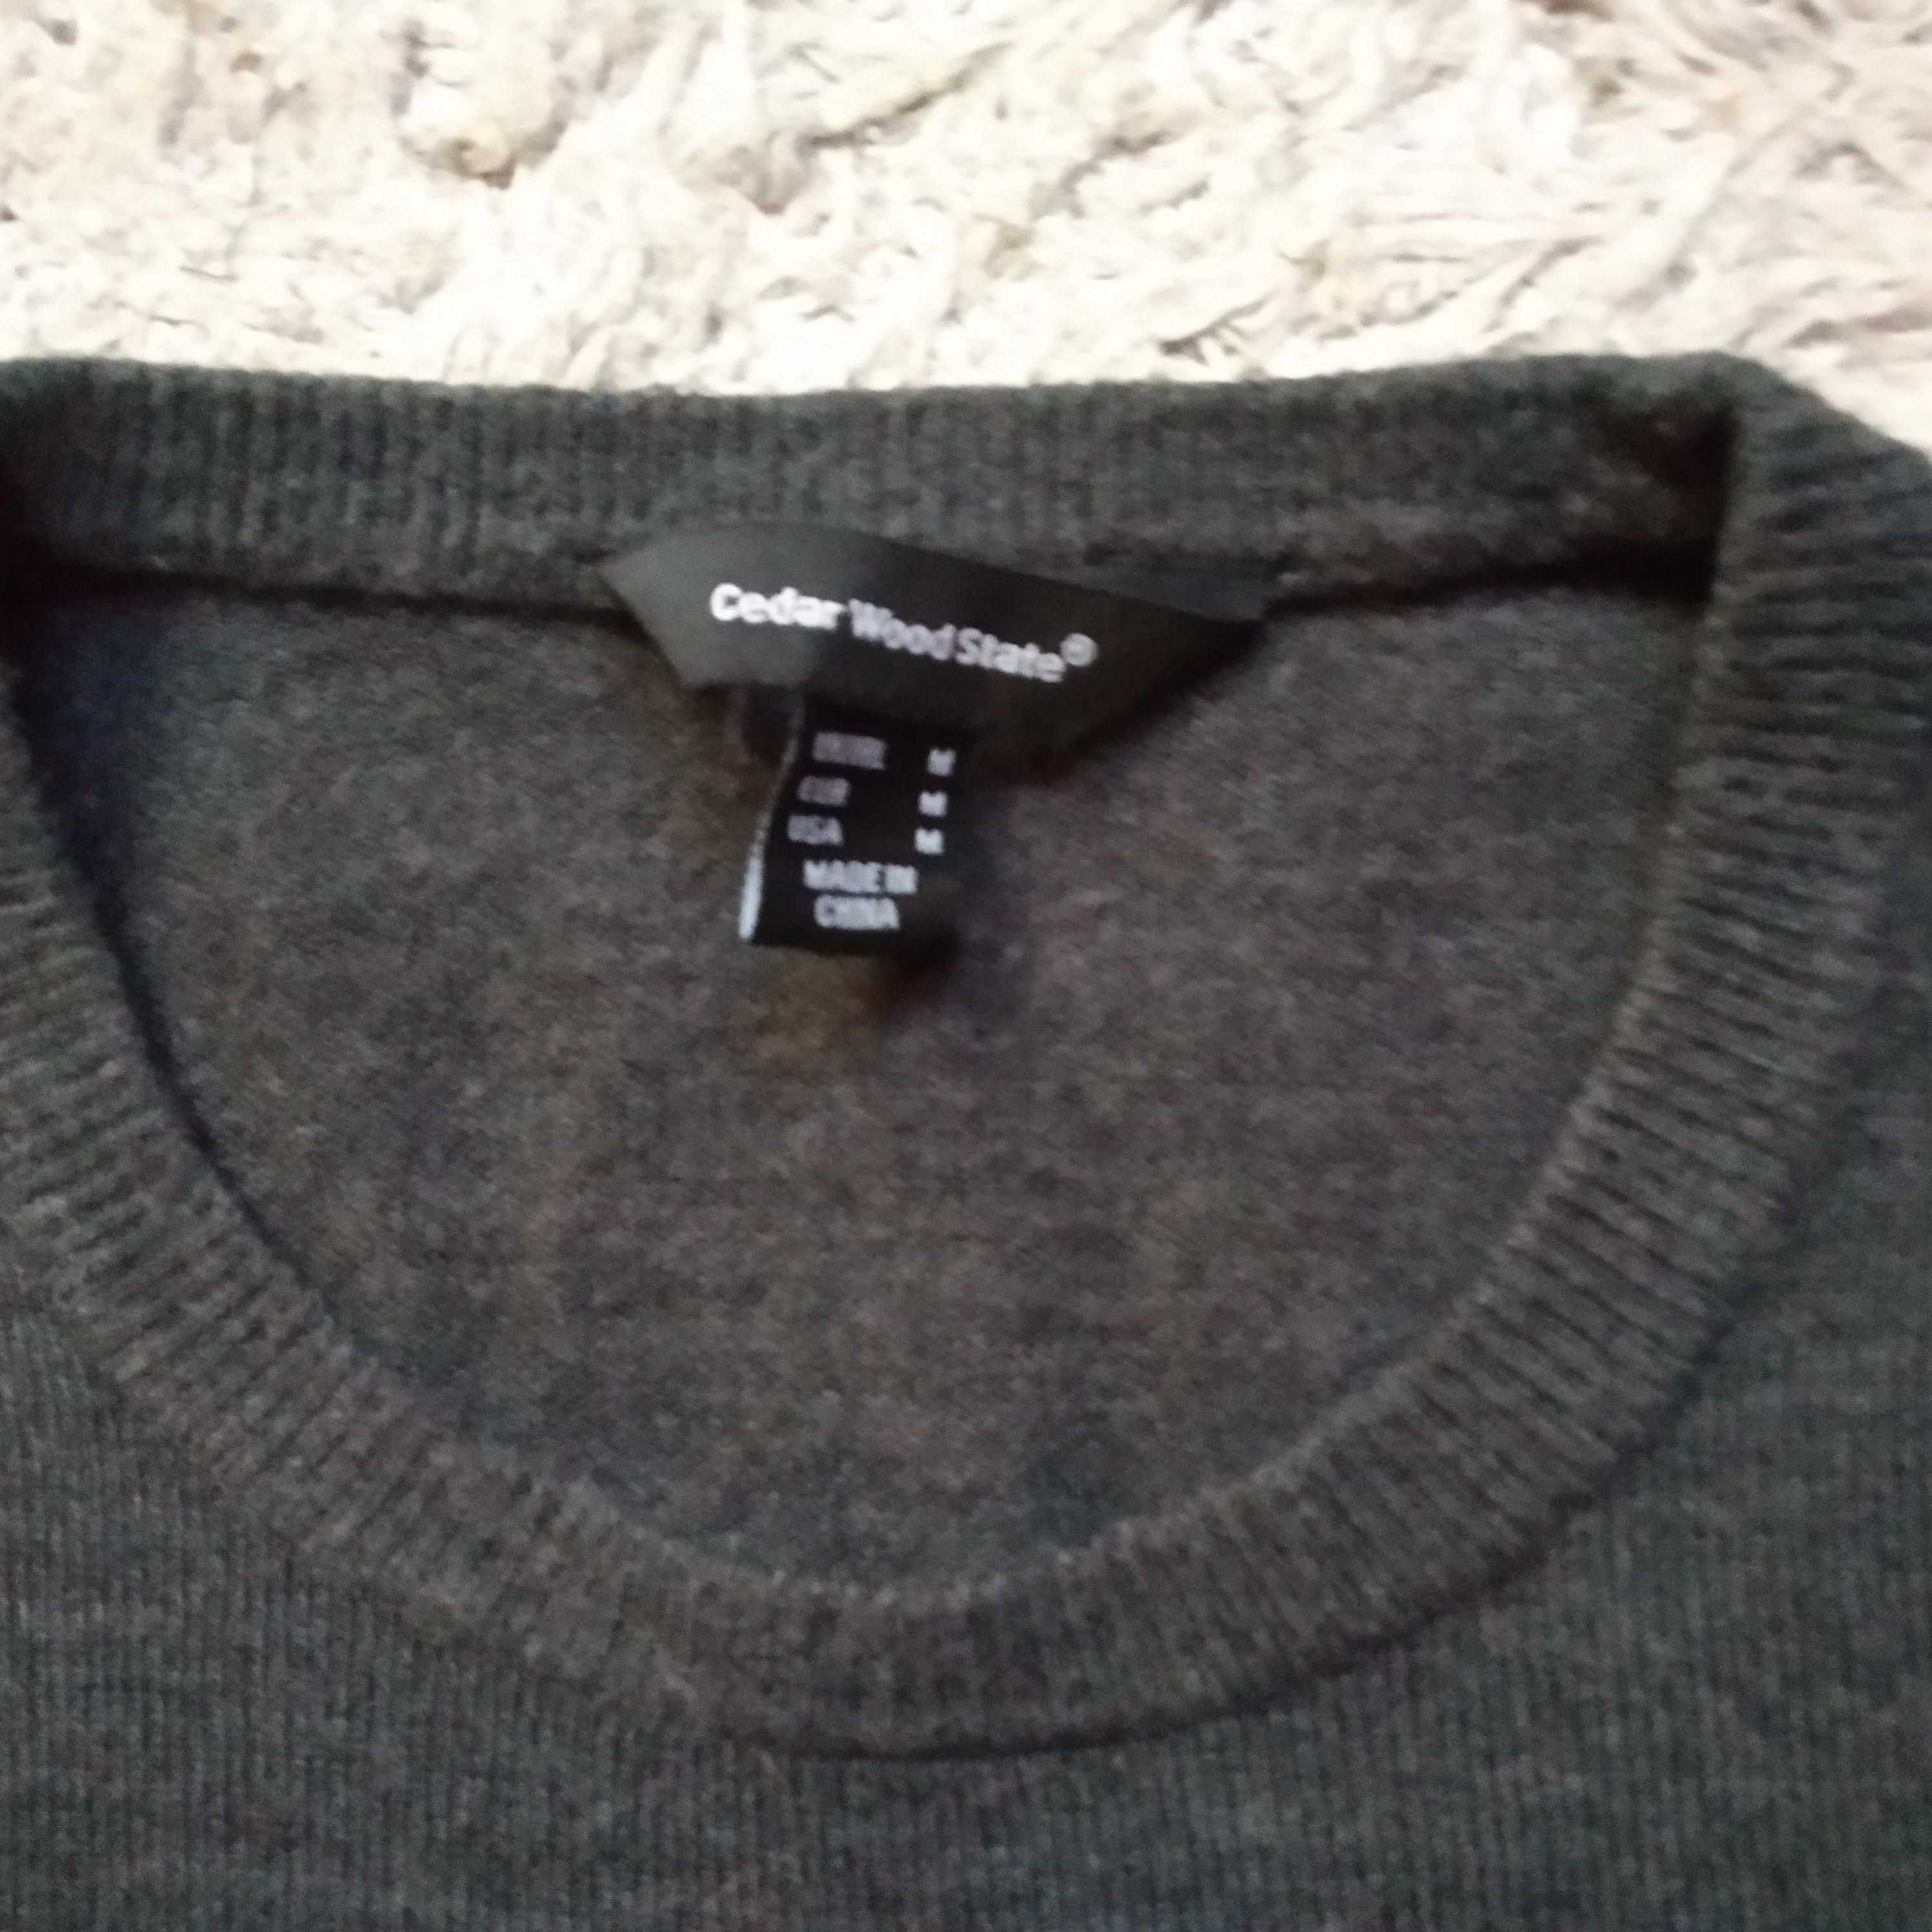 sweterek + koszulka M/176